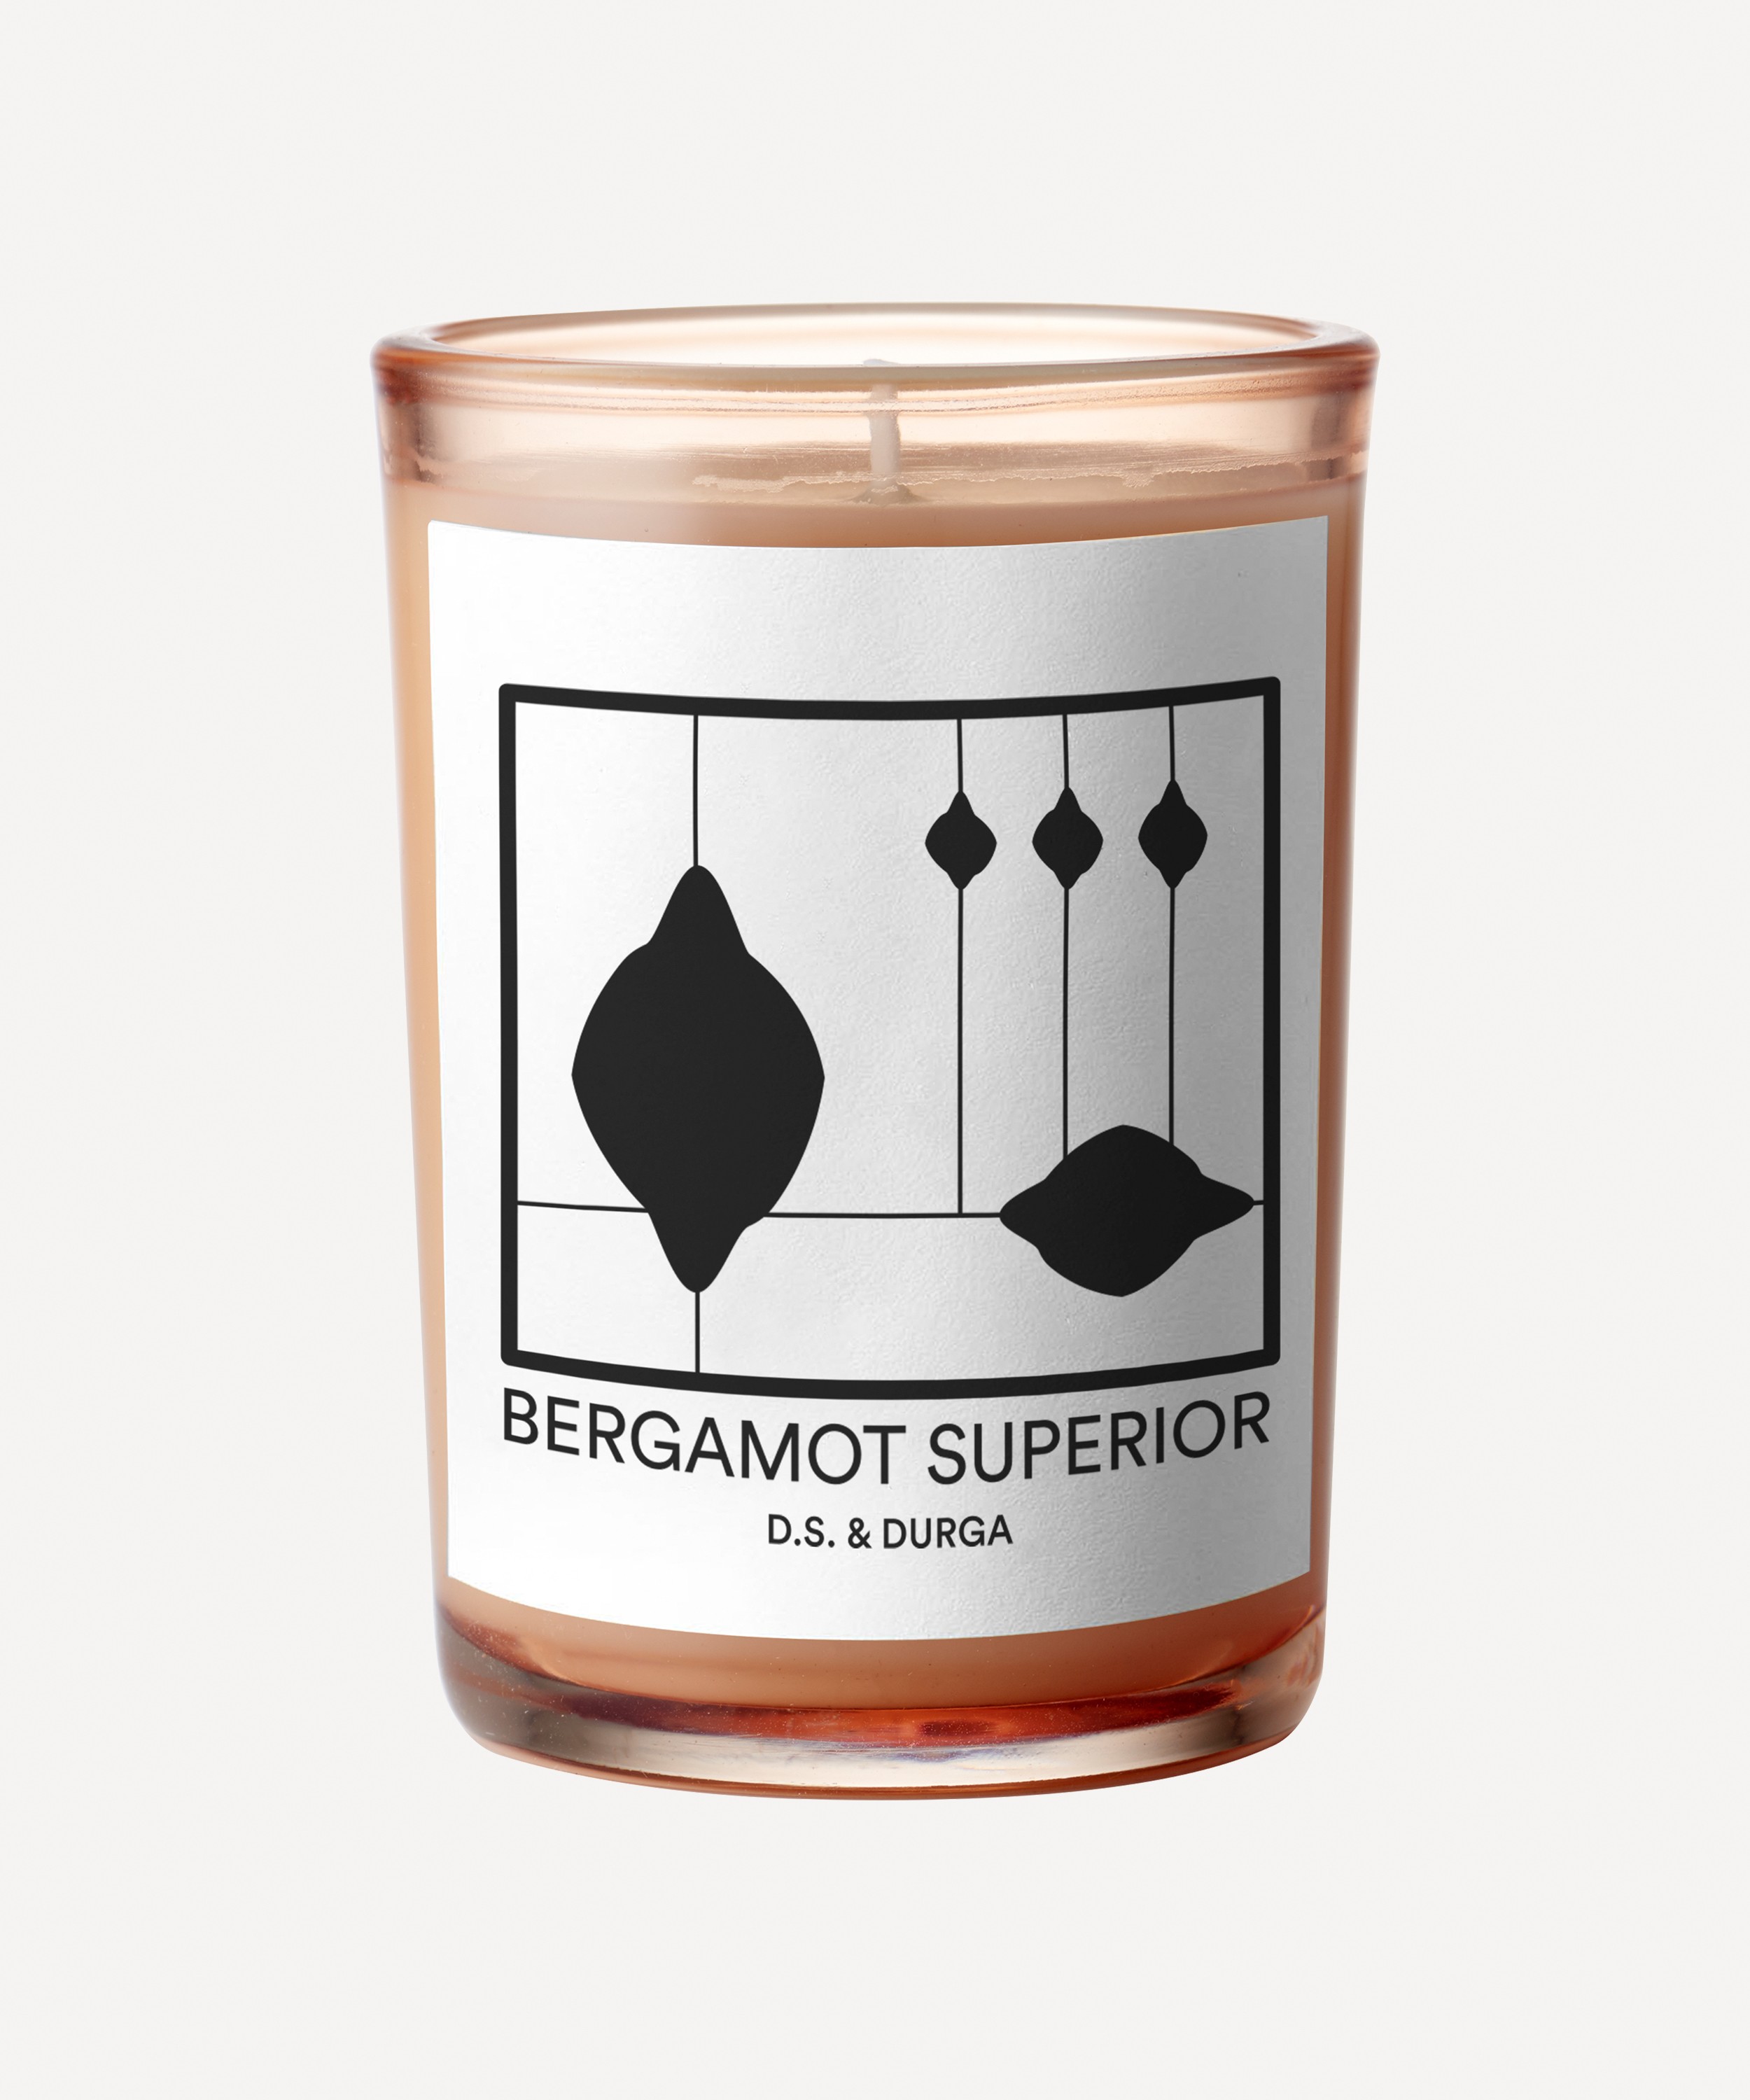 D.S. & Durga - Bergamot Superior Scented Candle 200g